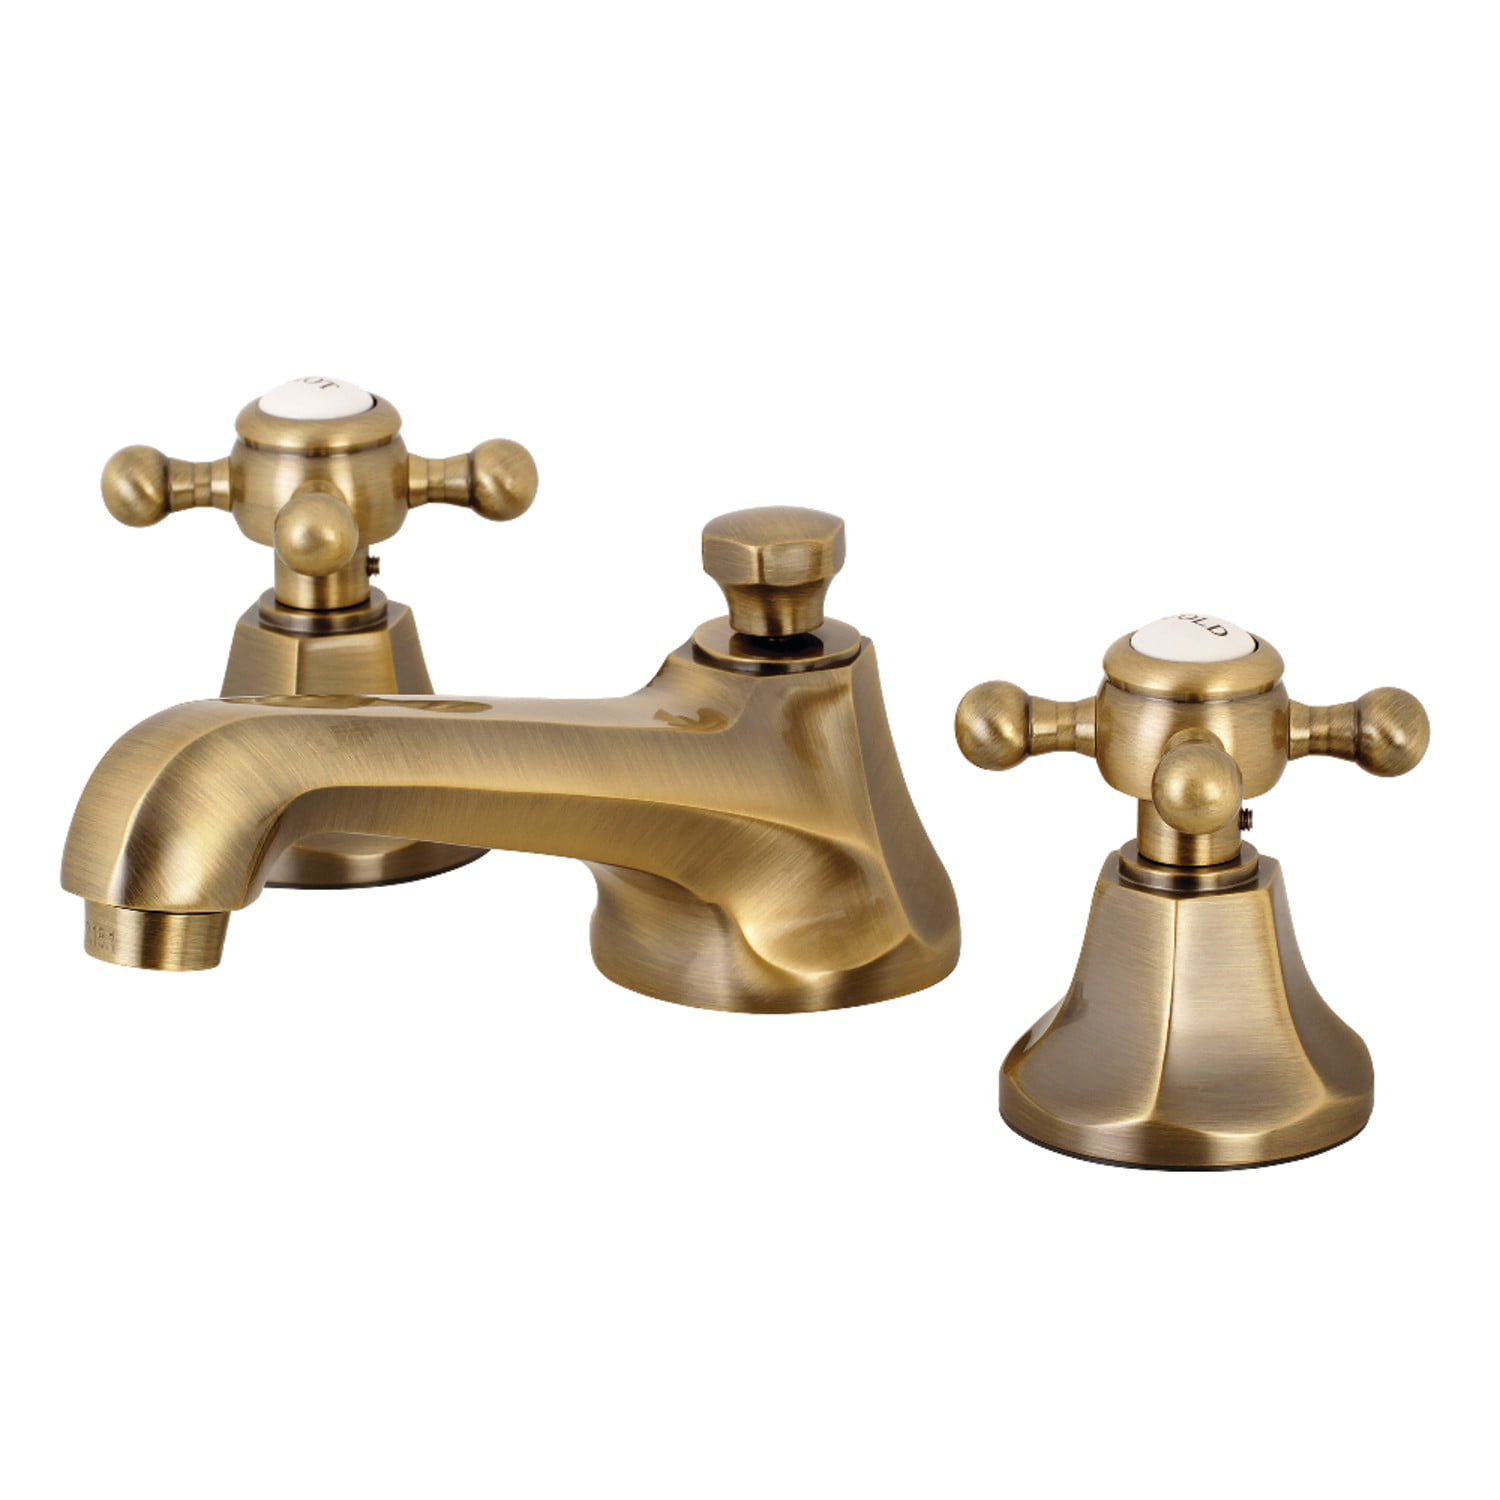 Antique Brass 8" Widespread Bathroom Basin Faucet Vanity Sink Mixer Tap Kan082 